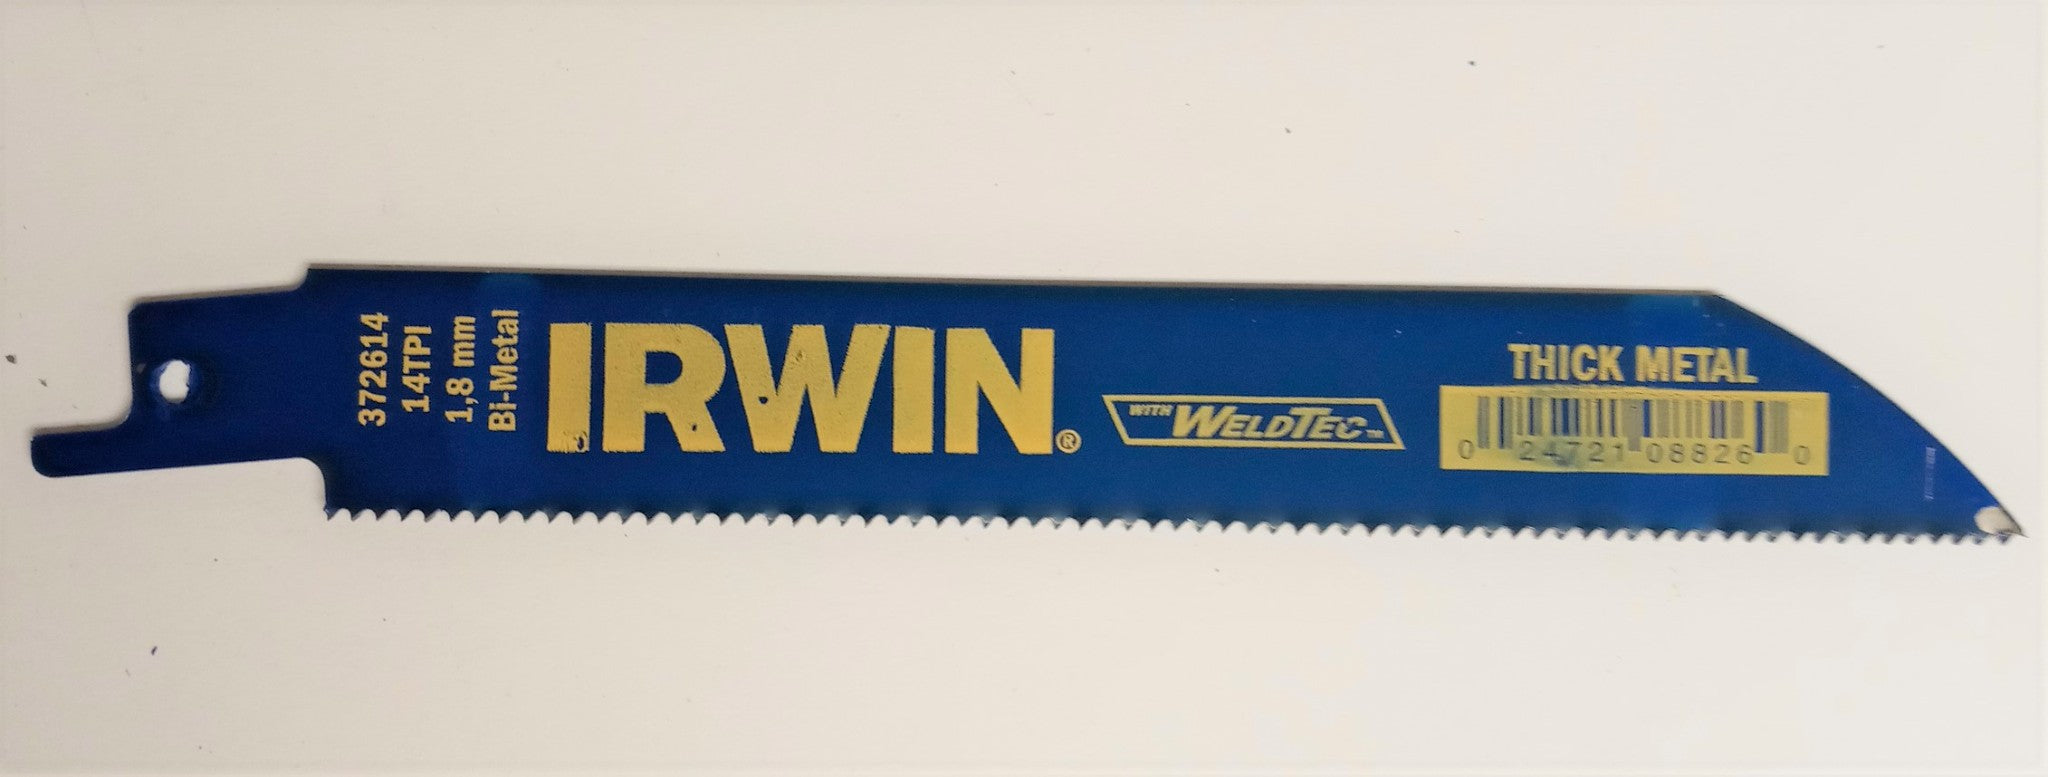 Irwin 372614BB 6" x 14 TPI Bi-Metal Reciprocating Saw Blades Weldtec USA 50pcs